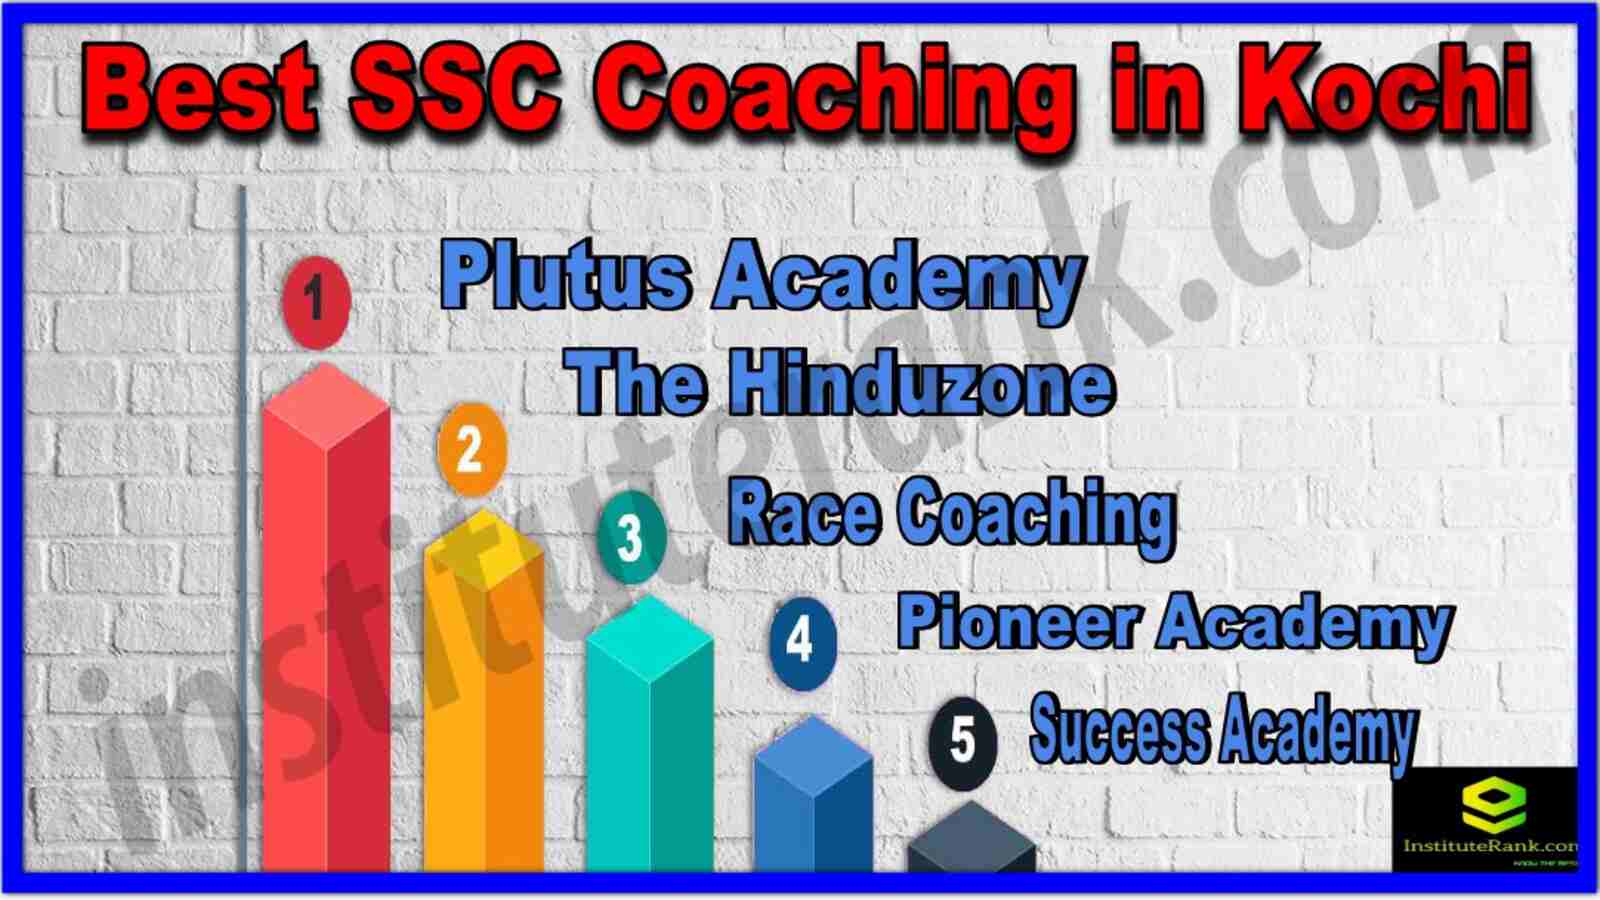 Best SSC Coaching in Kochi